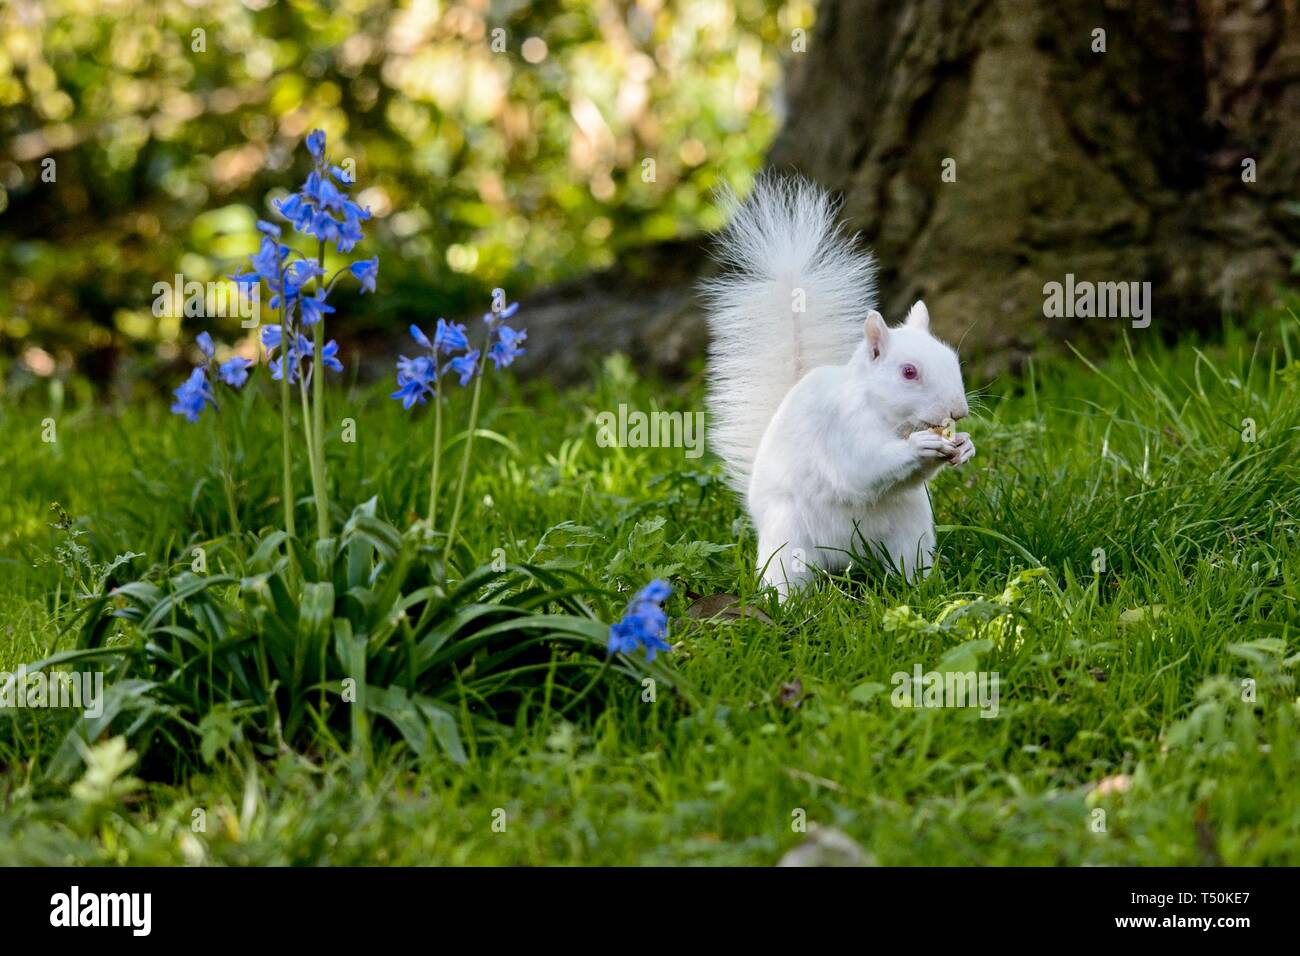 Dieses seltene Albino Grey Eichhörnchen wurde heute Morgen in einem Park in Eastbourne gesichtet und genoss scheinbar das gute Wetter, während er an Ästen knabberte. Echte Albinos haben keine Pigmentierung, was zu rosa Augen und weißem Fell führt und haben oft eine kürzere Lebensdauer als normale Eichhörnchen. Stockfoto